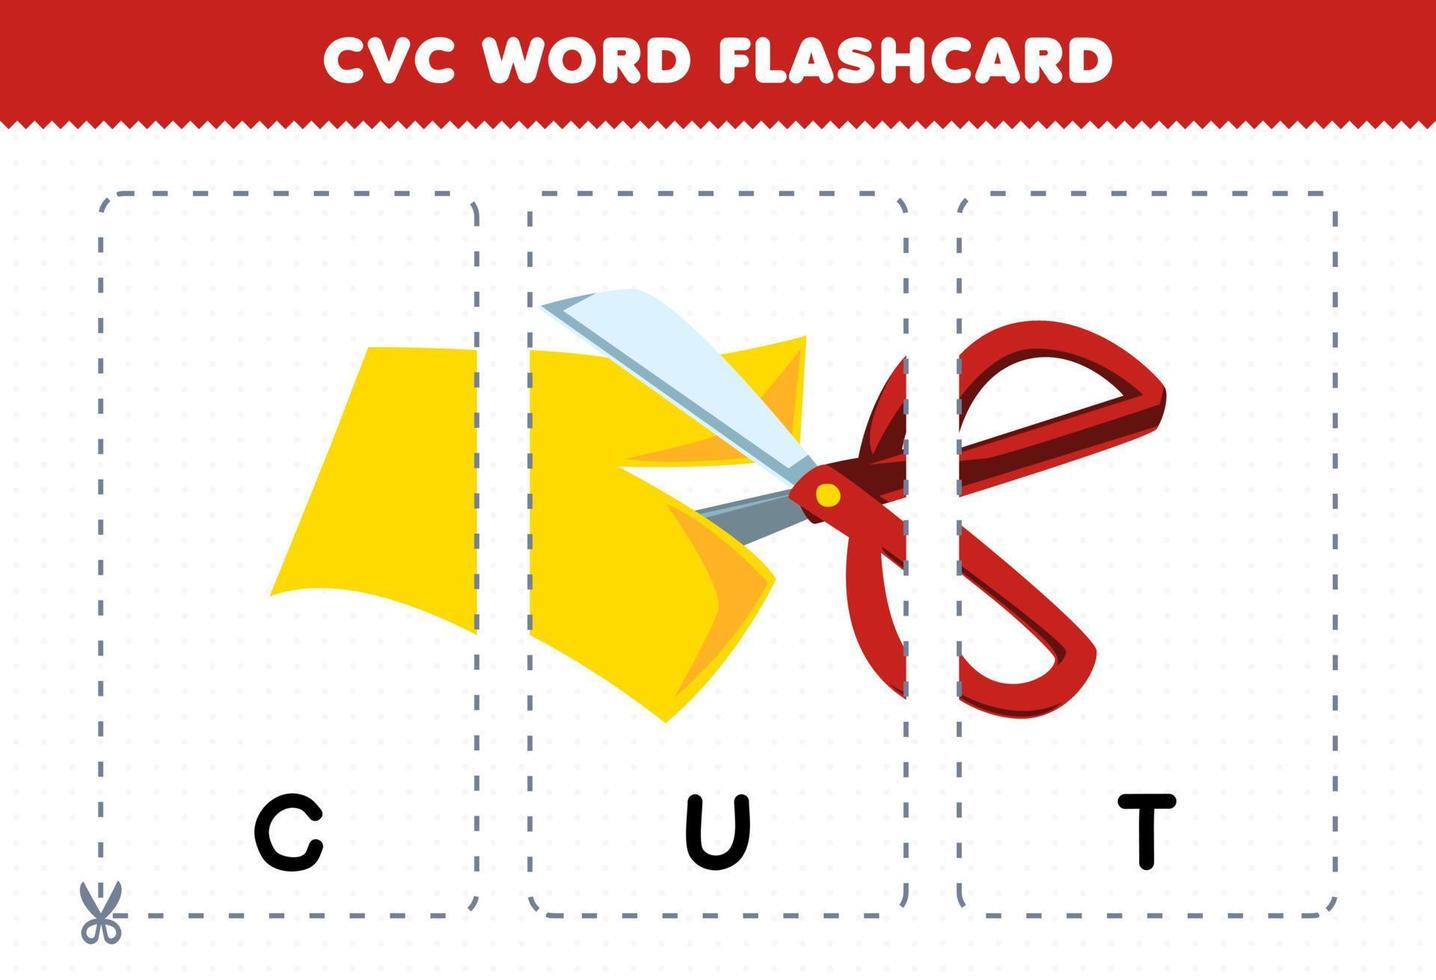 jogo de educação para crianças aprendendo palavra consoante vogal consoante com papel de corte bonito dos desenhos animados com flashcard imprimível de ilustração de tesoura vetor